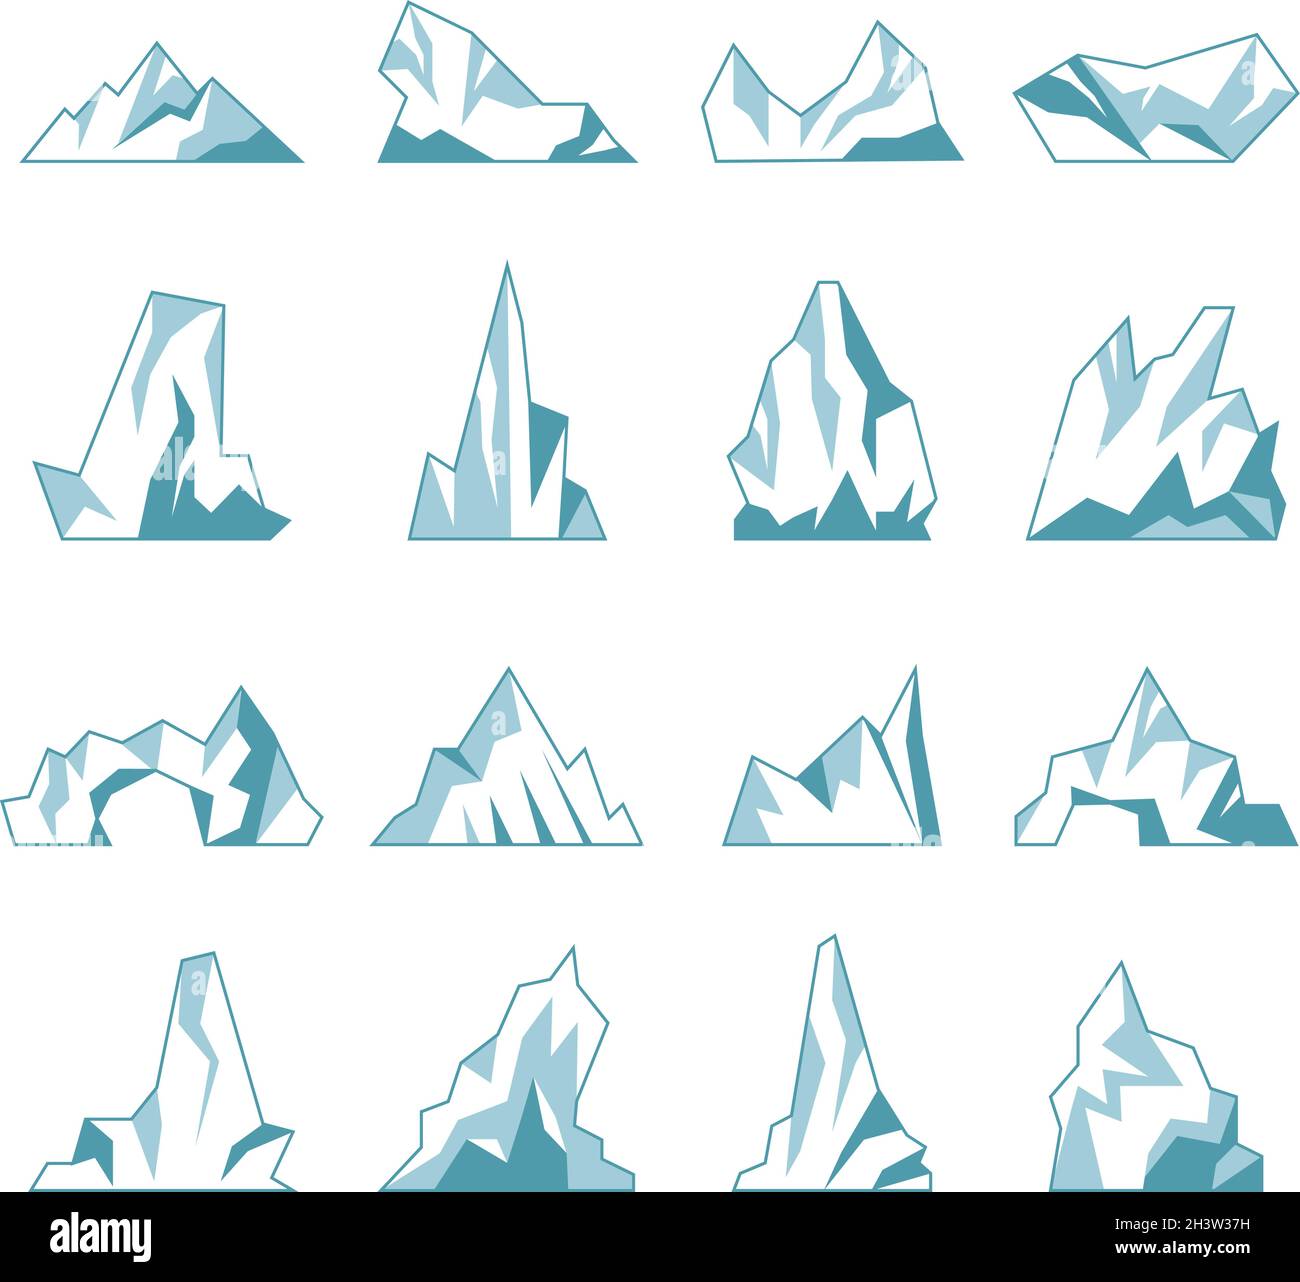 Iceberg.North pole Hills hiver montagnes dans l'océan glace glace roche neige récente collection de vecteurs Illustration de Vecteur